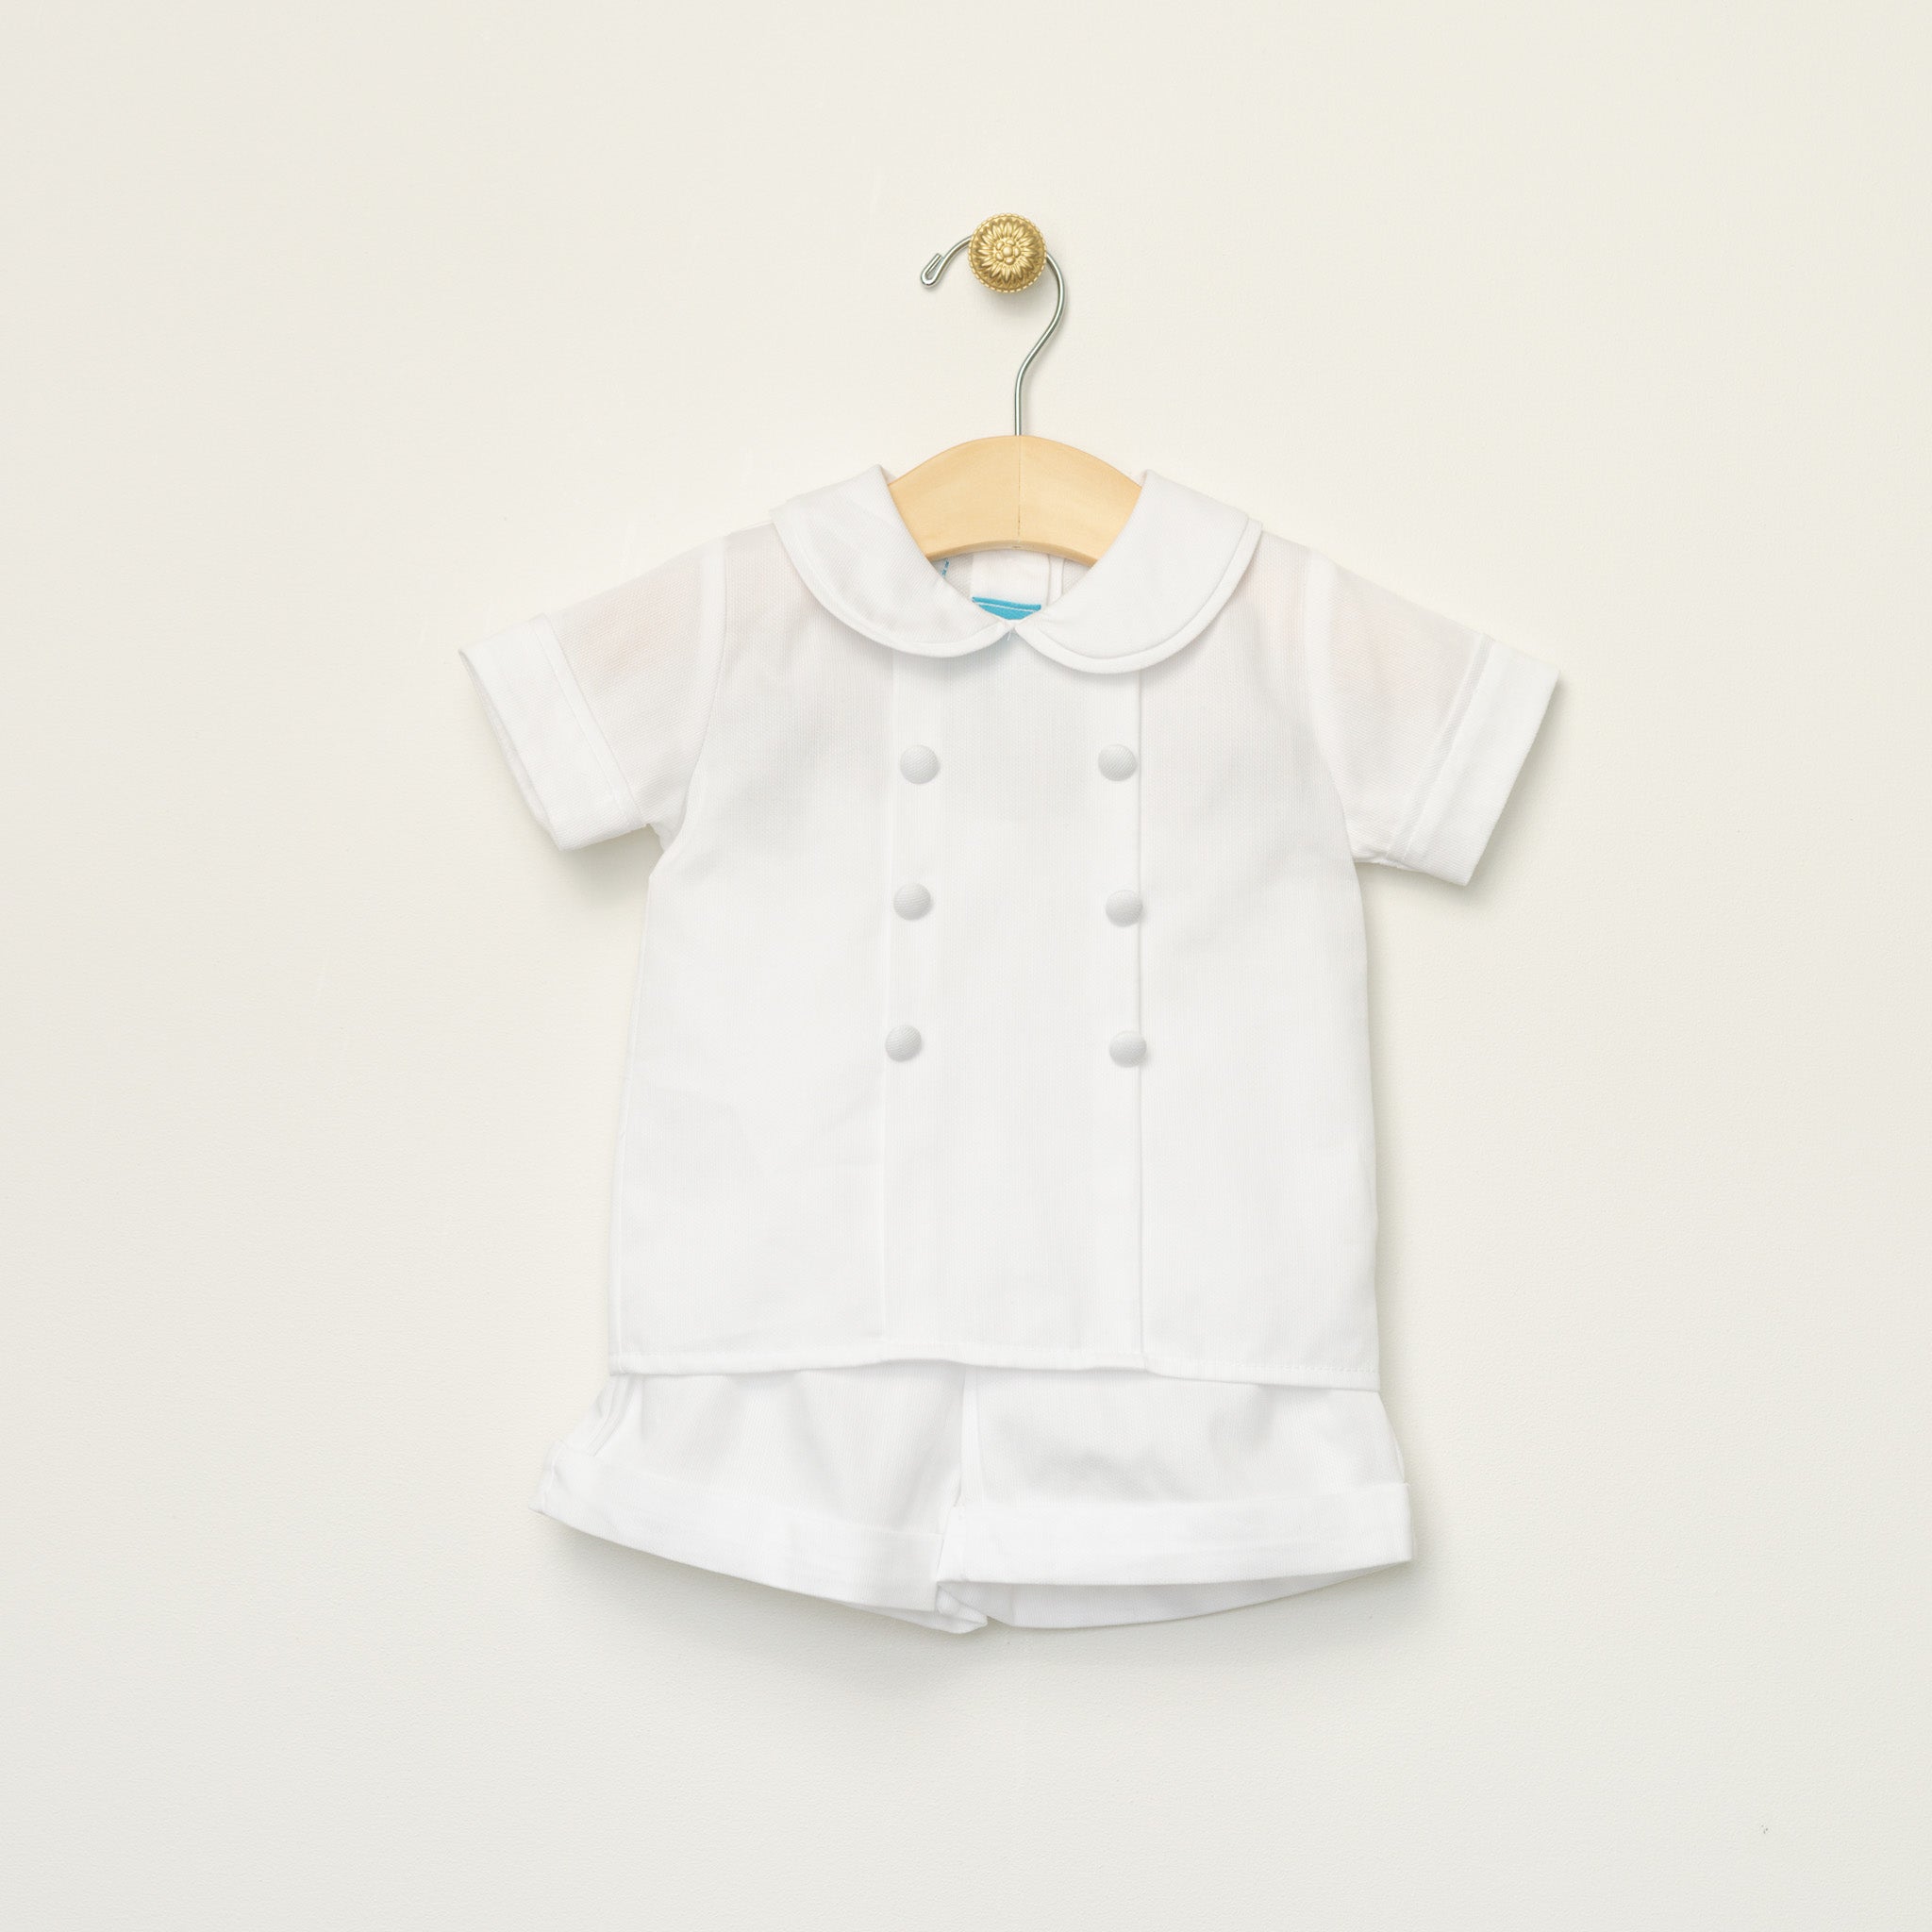 Infant Boy's White Pique Short Set